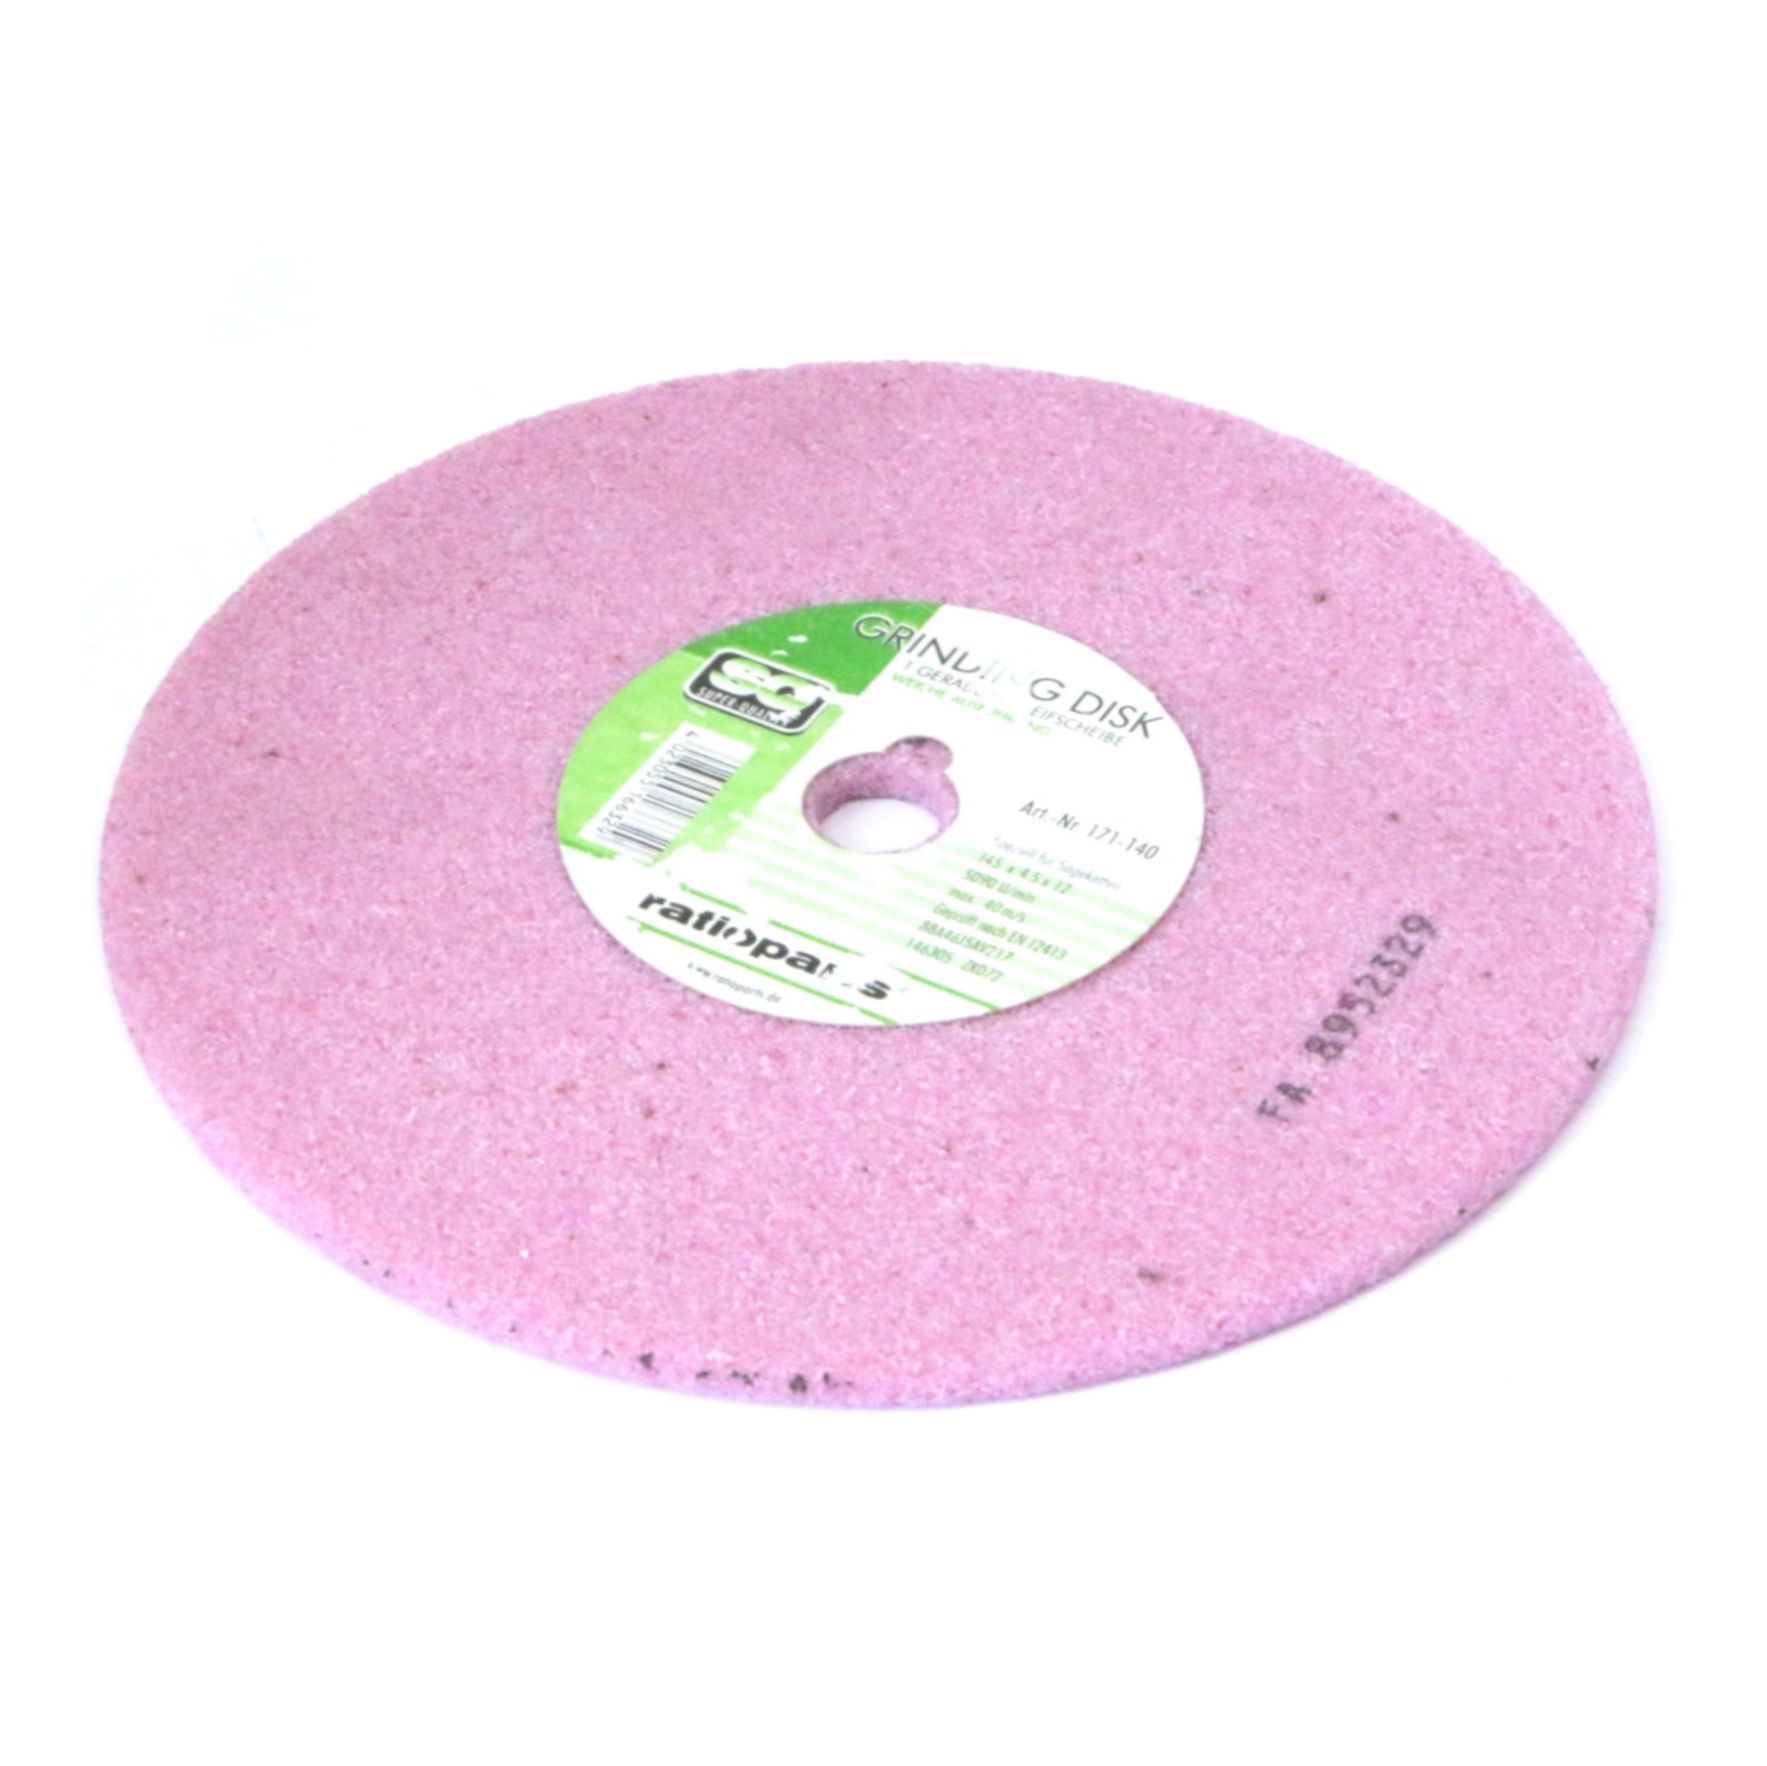 disc ascutire lant D145 Ø12.1 =4.5mm pt.3/8,404" pt.Stihl (soft) RP roz  #171-140